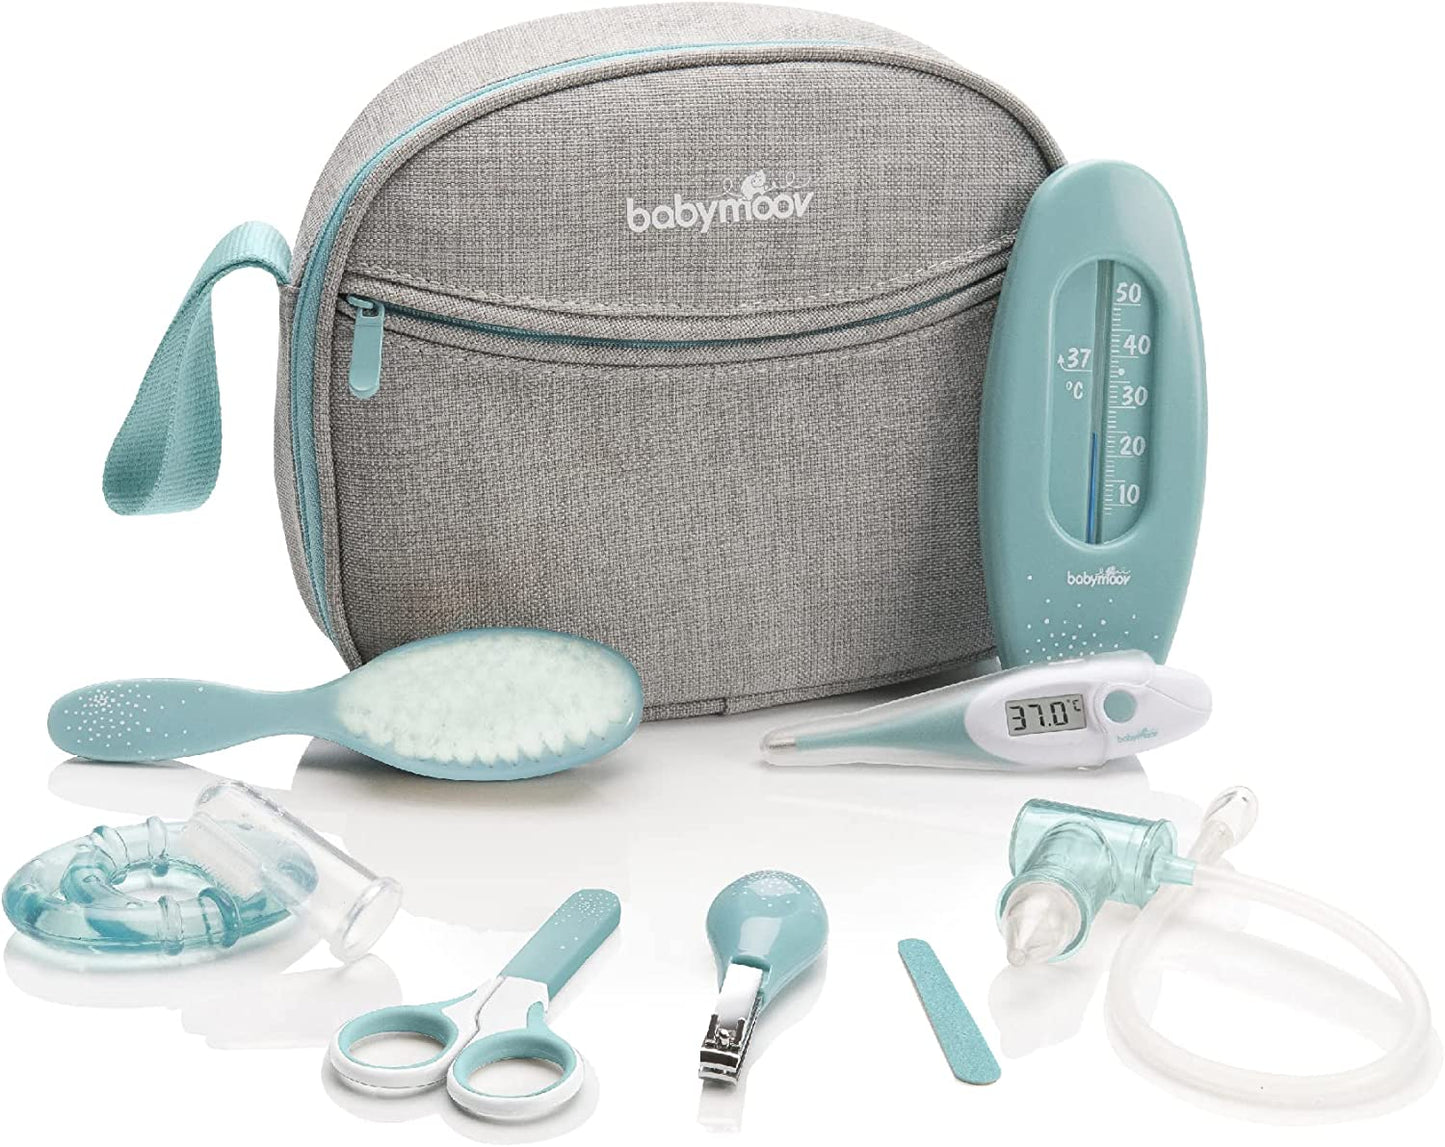 Babymoov Kit de Higiene, Cuidados de saúde e Cuidados Infantis, cinza / azul